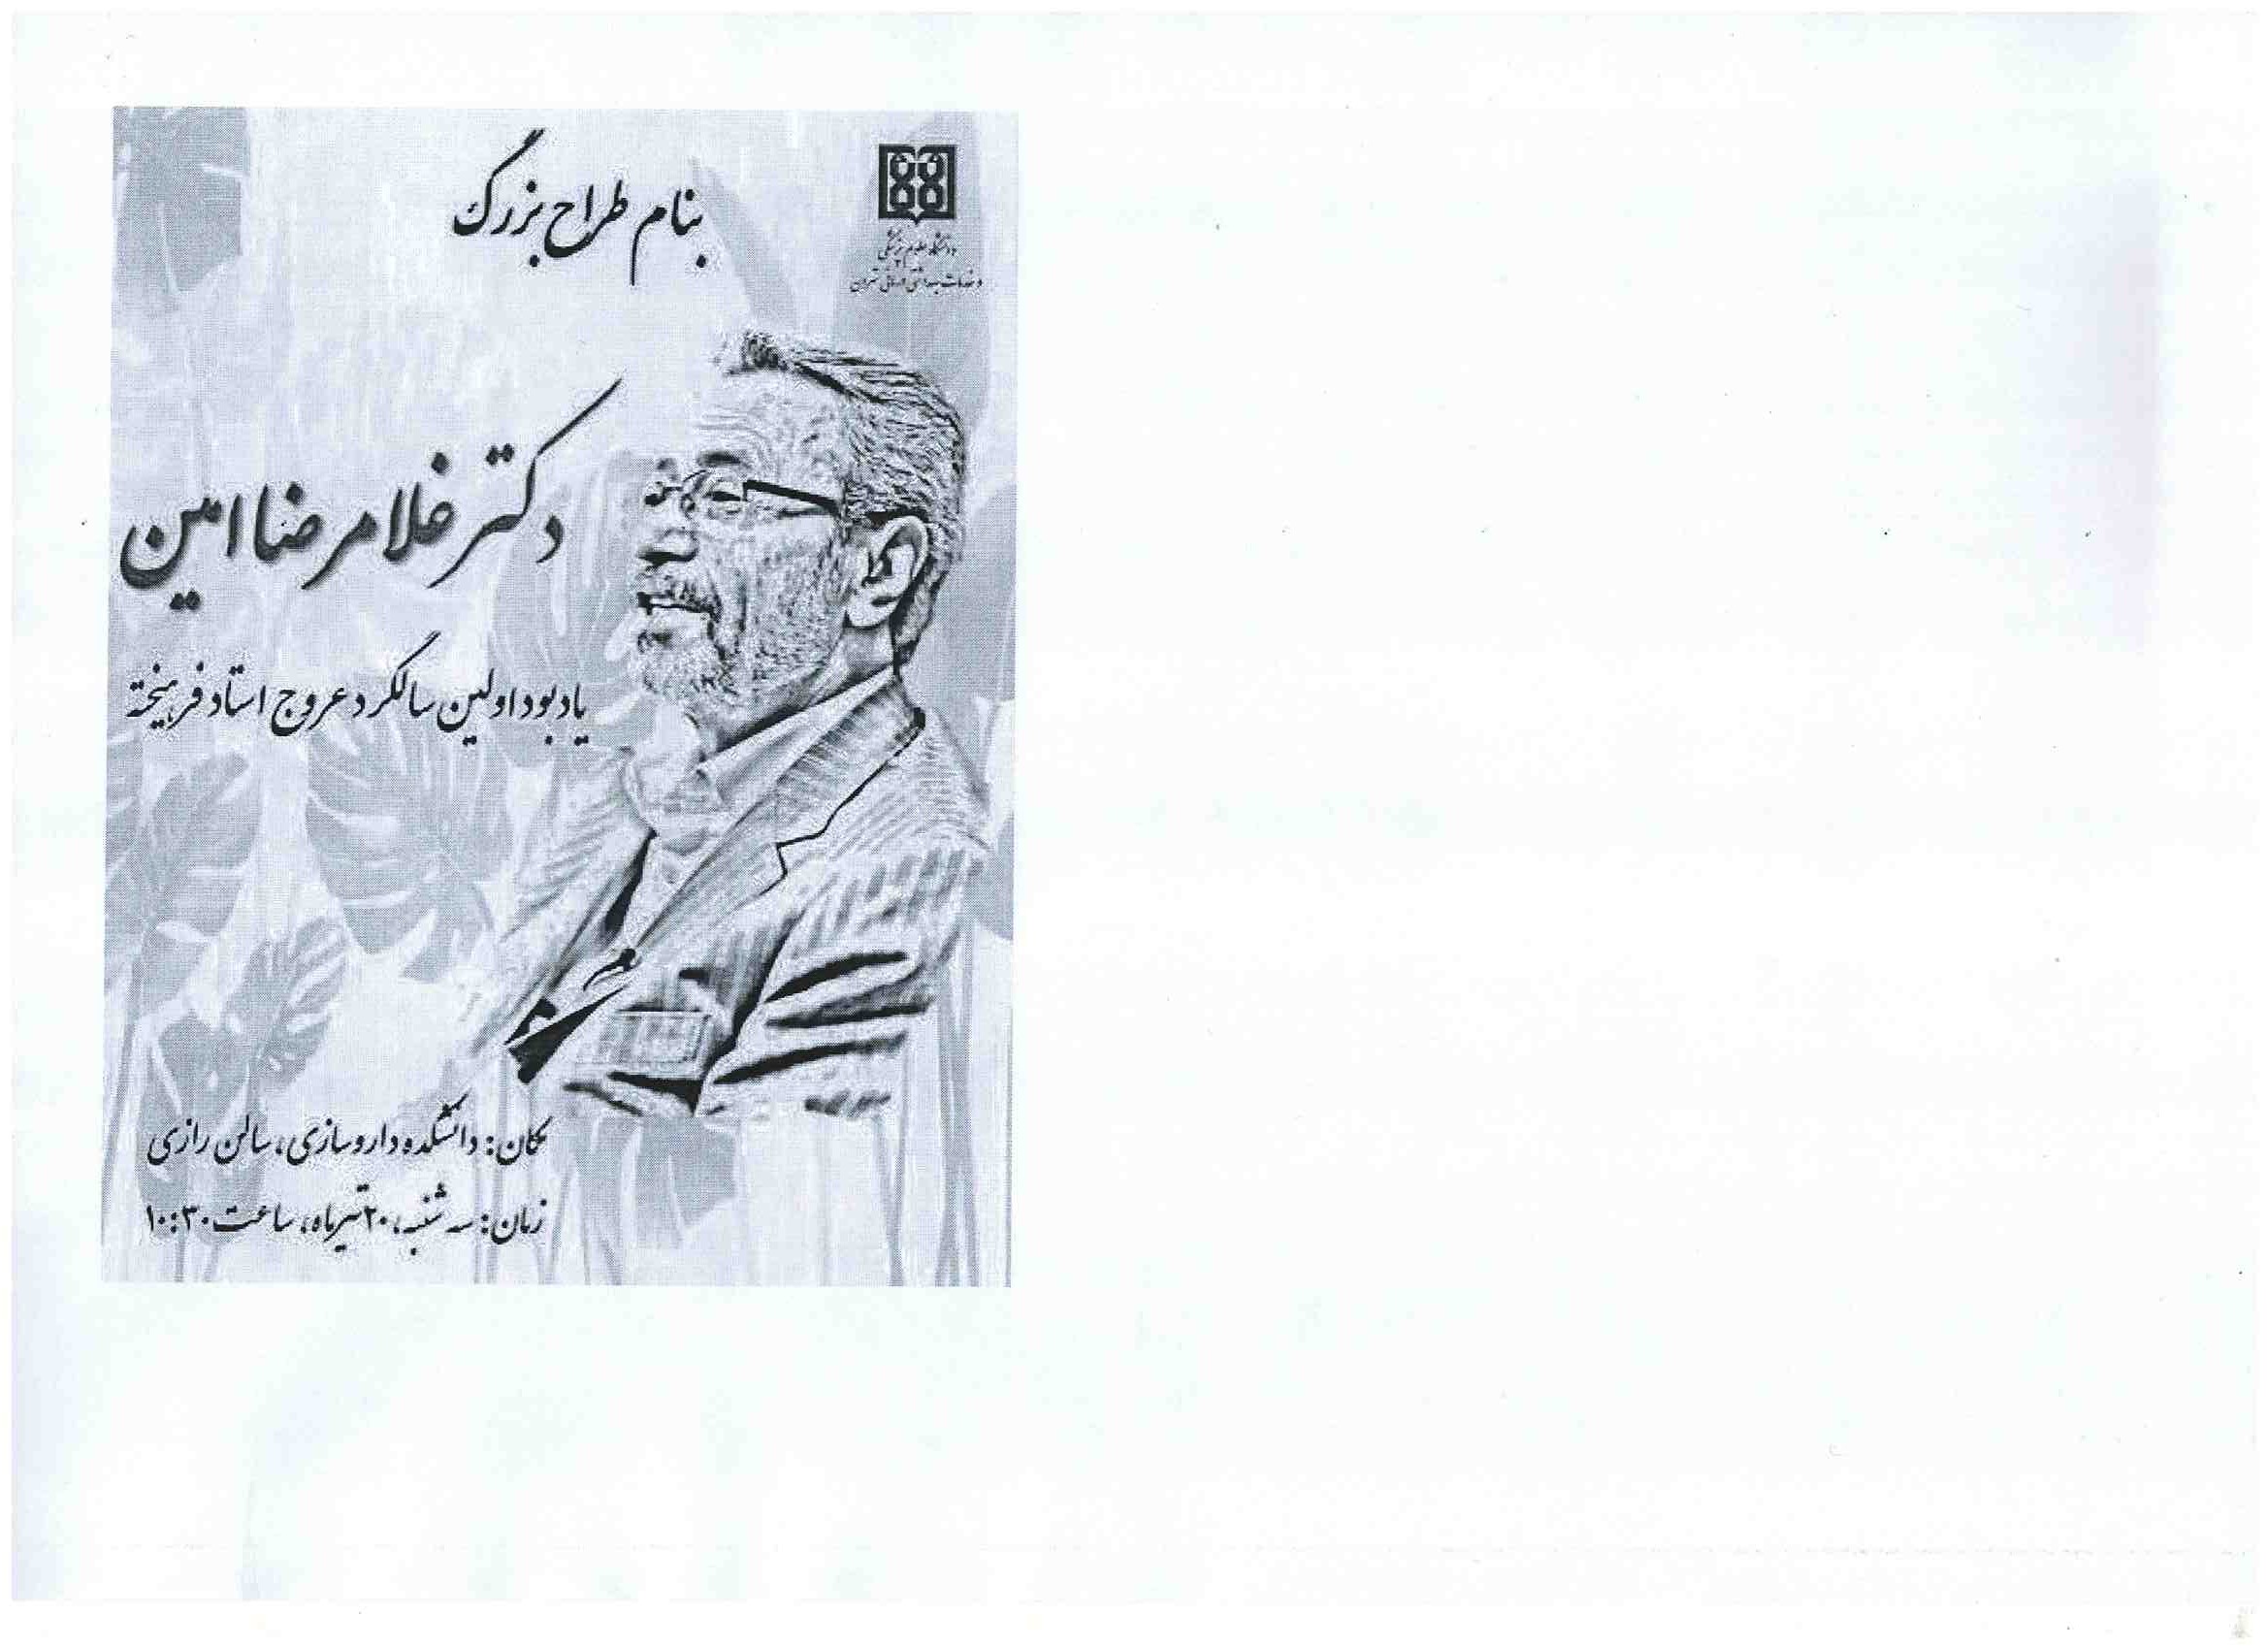 اولین سالگرد درگذشت دکتر غلامرضا امین سه شنبه 20 تیر 1402 ساعت 10.30 دانشکده داروسازی تالار رازی